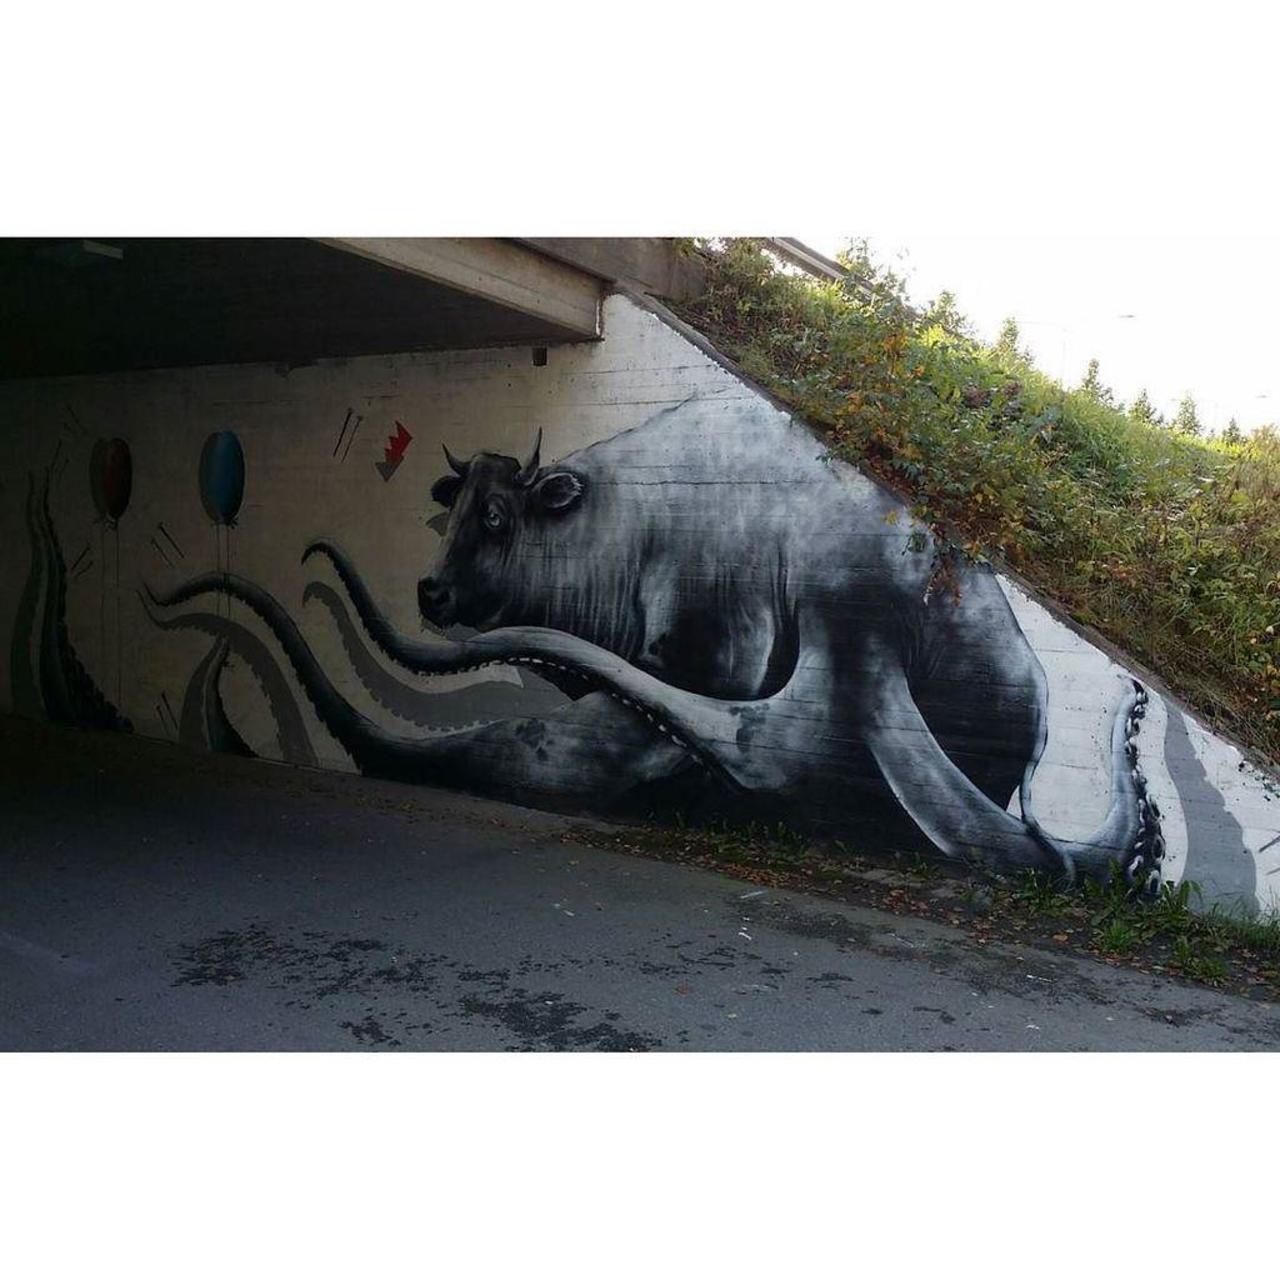 Stas Bags, 2015.

#graffiti #graff #graffporn #graffitiporn #streetart #streetartworldwide… http://ift.tt/1Vl3A1s http://t.co/zZAkcLKmtZ